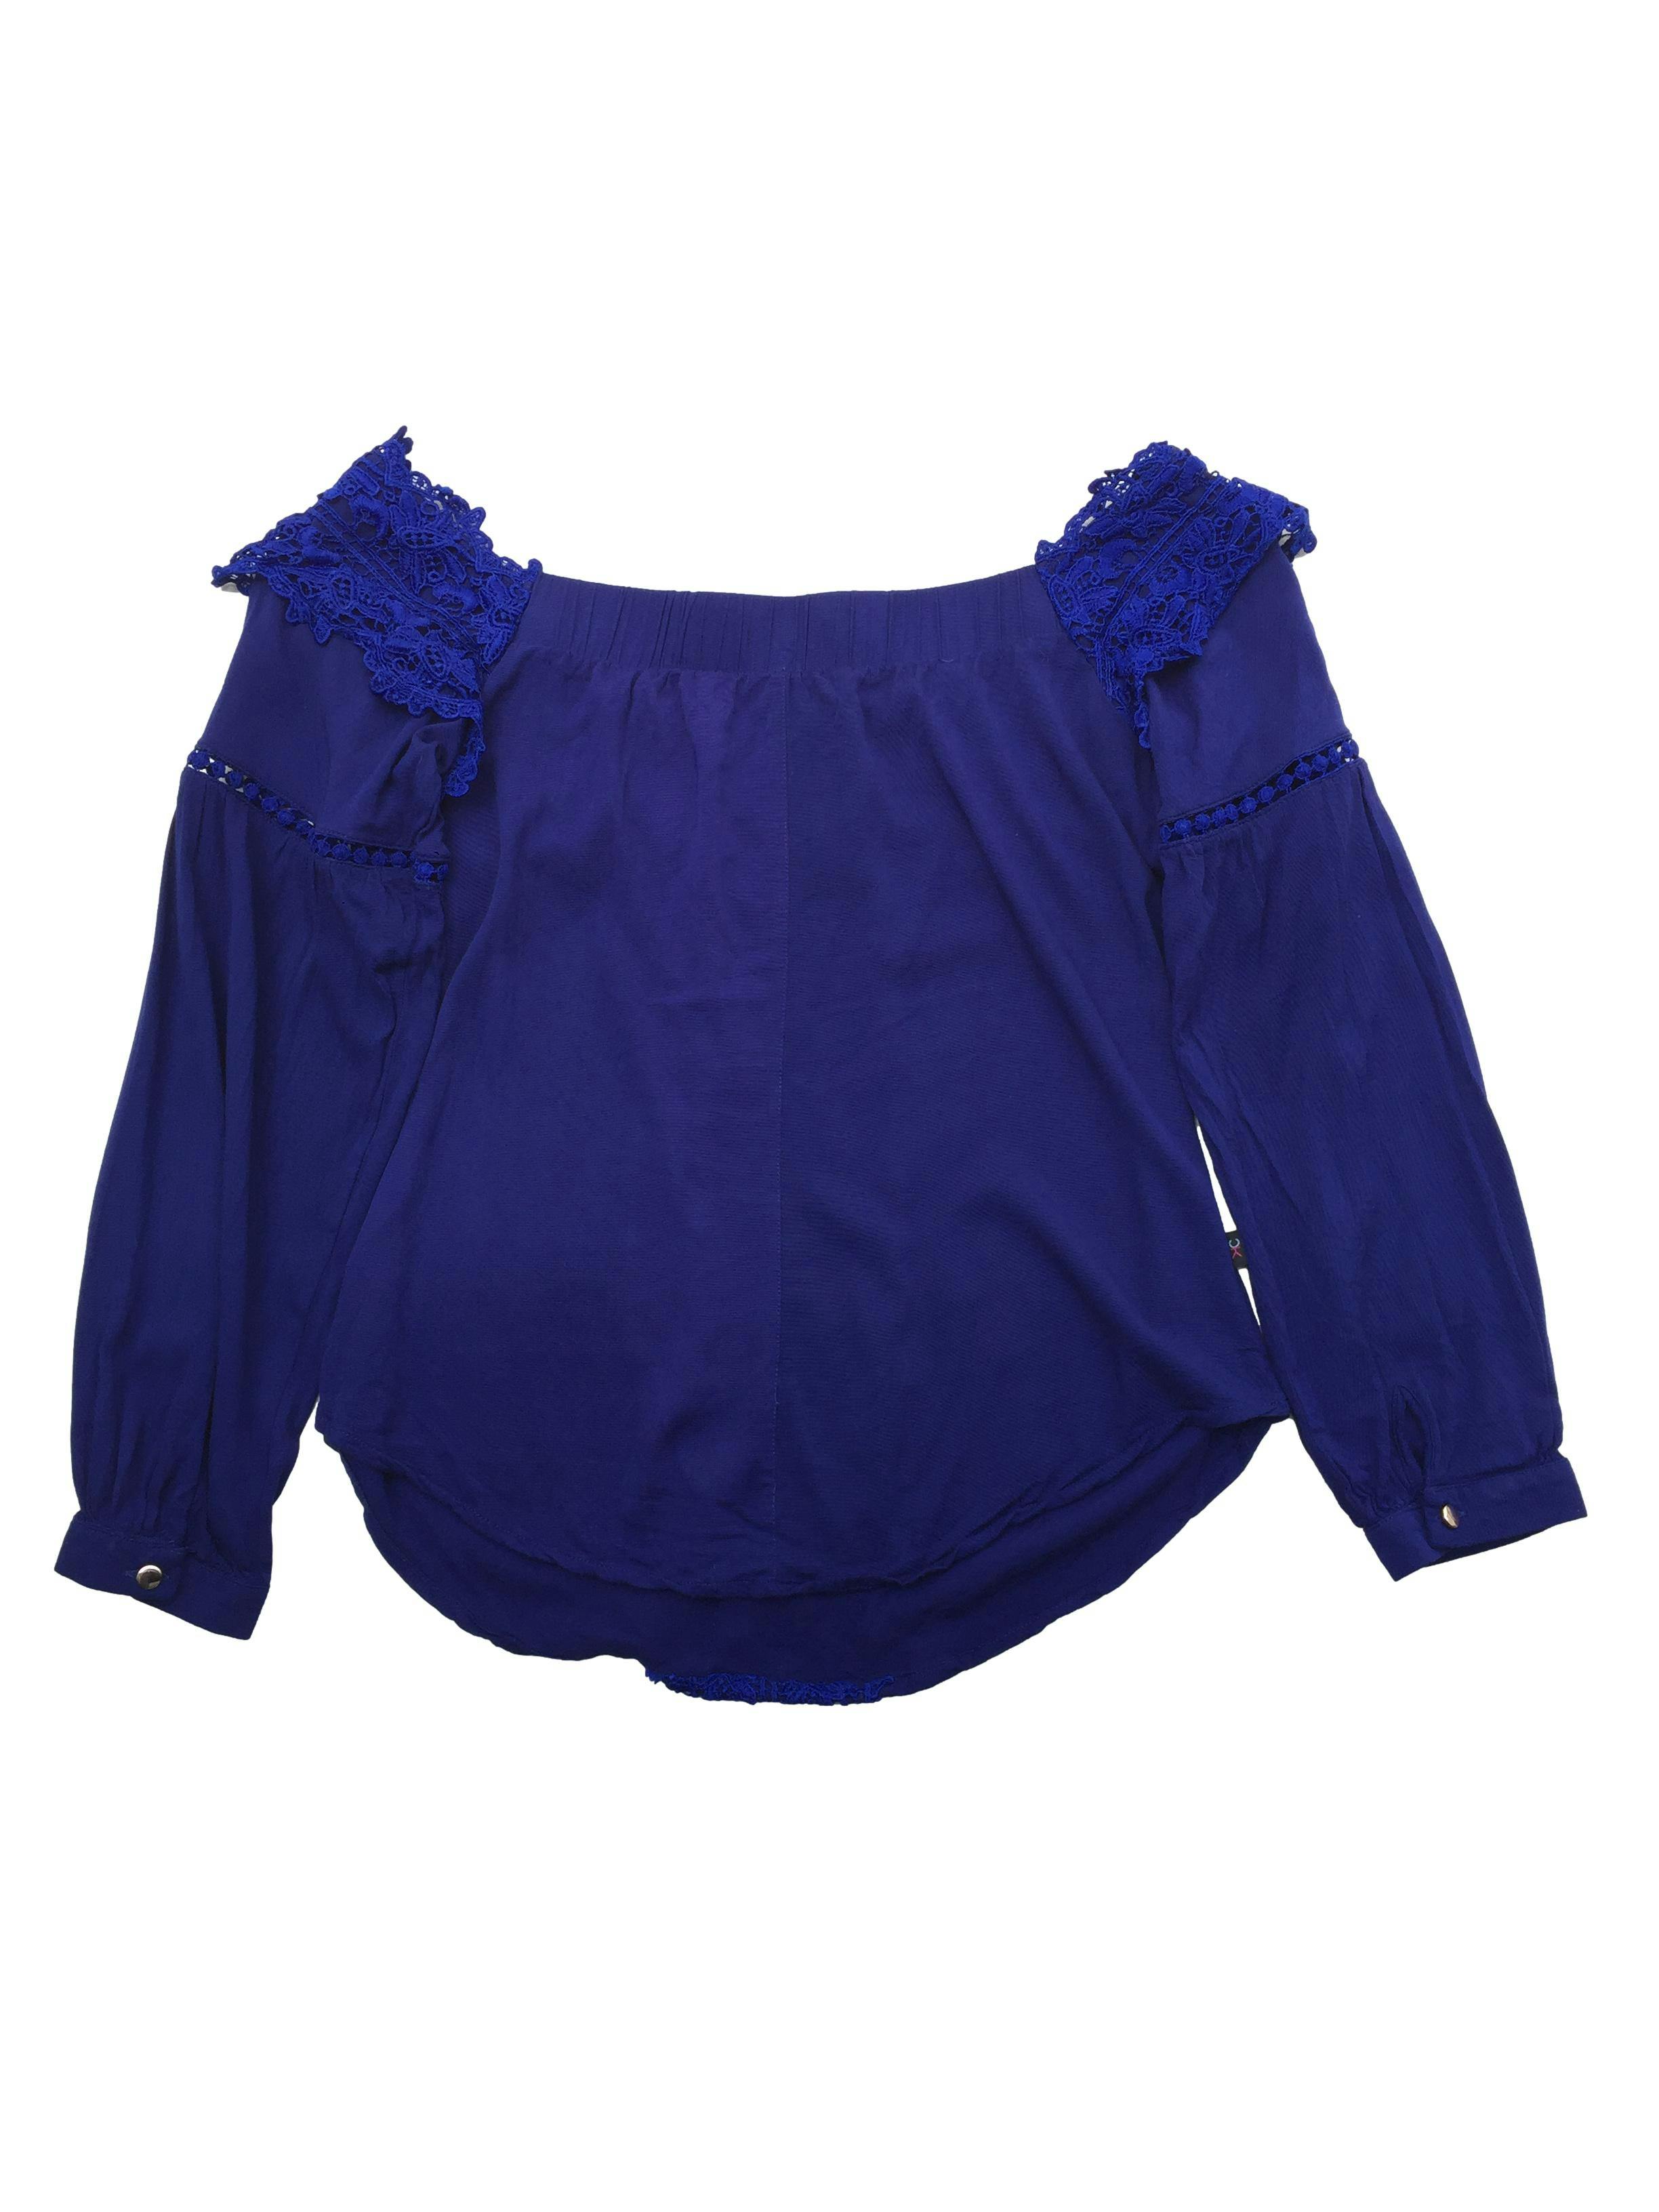 Blusa off-shoulder azul con encaje, elástico en escote posterior y mangas abullonadas. Busto 90cm, Largo 45cm.